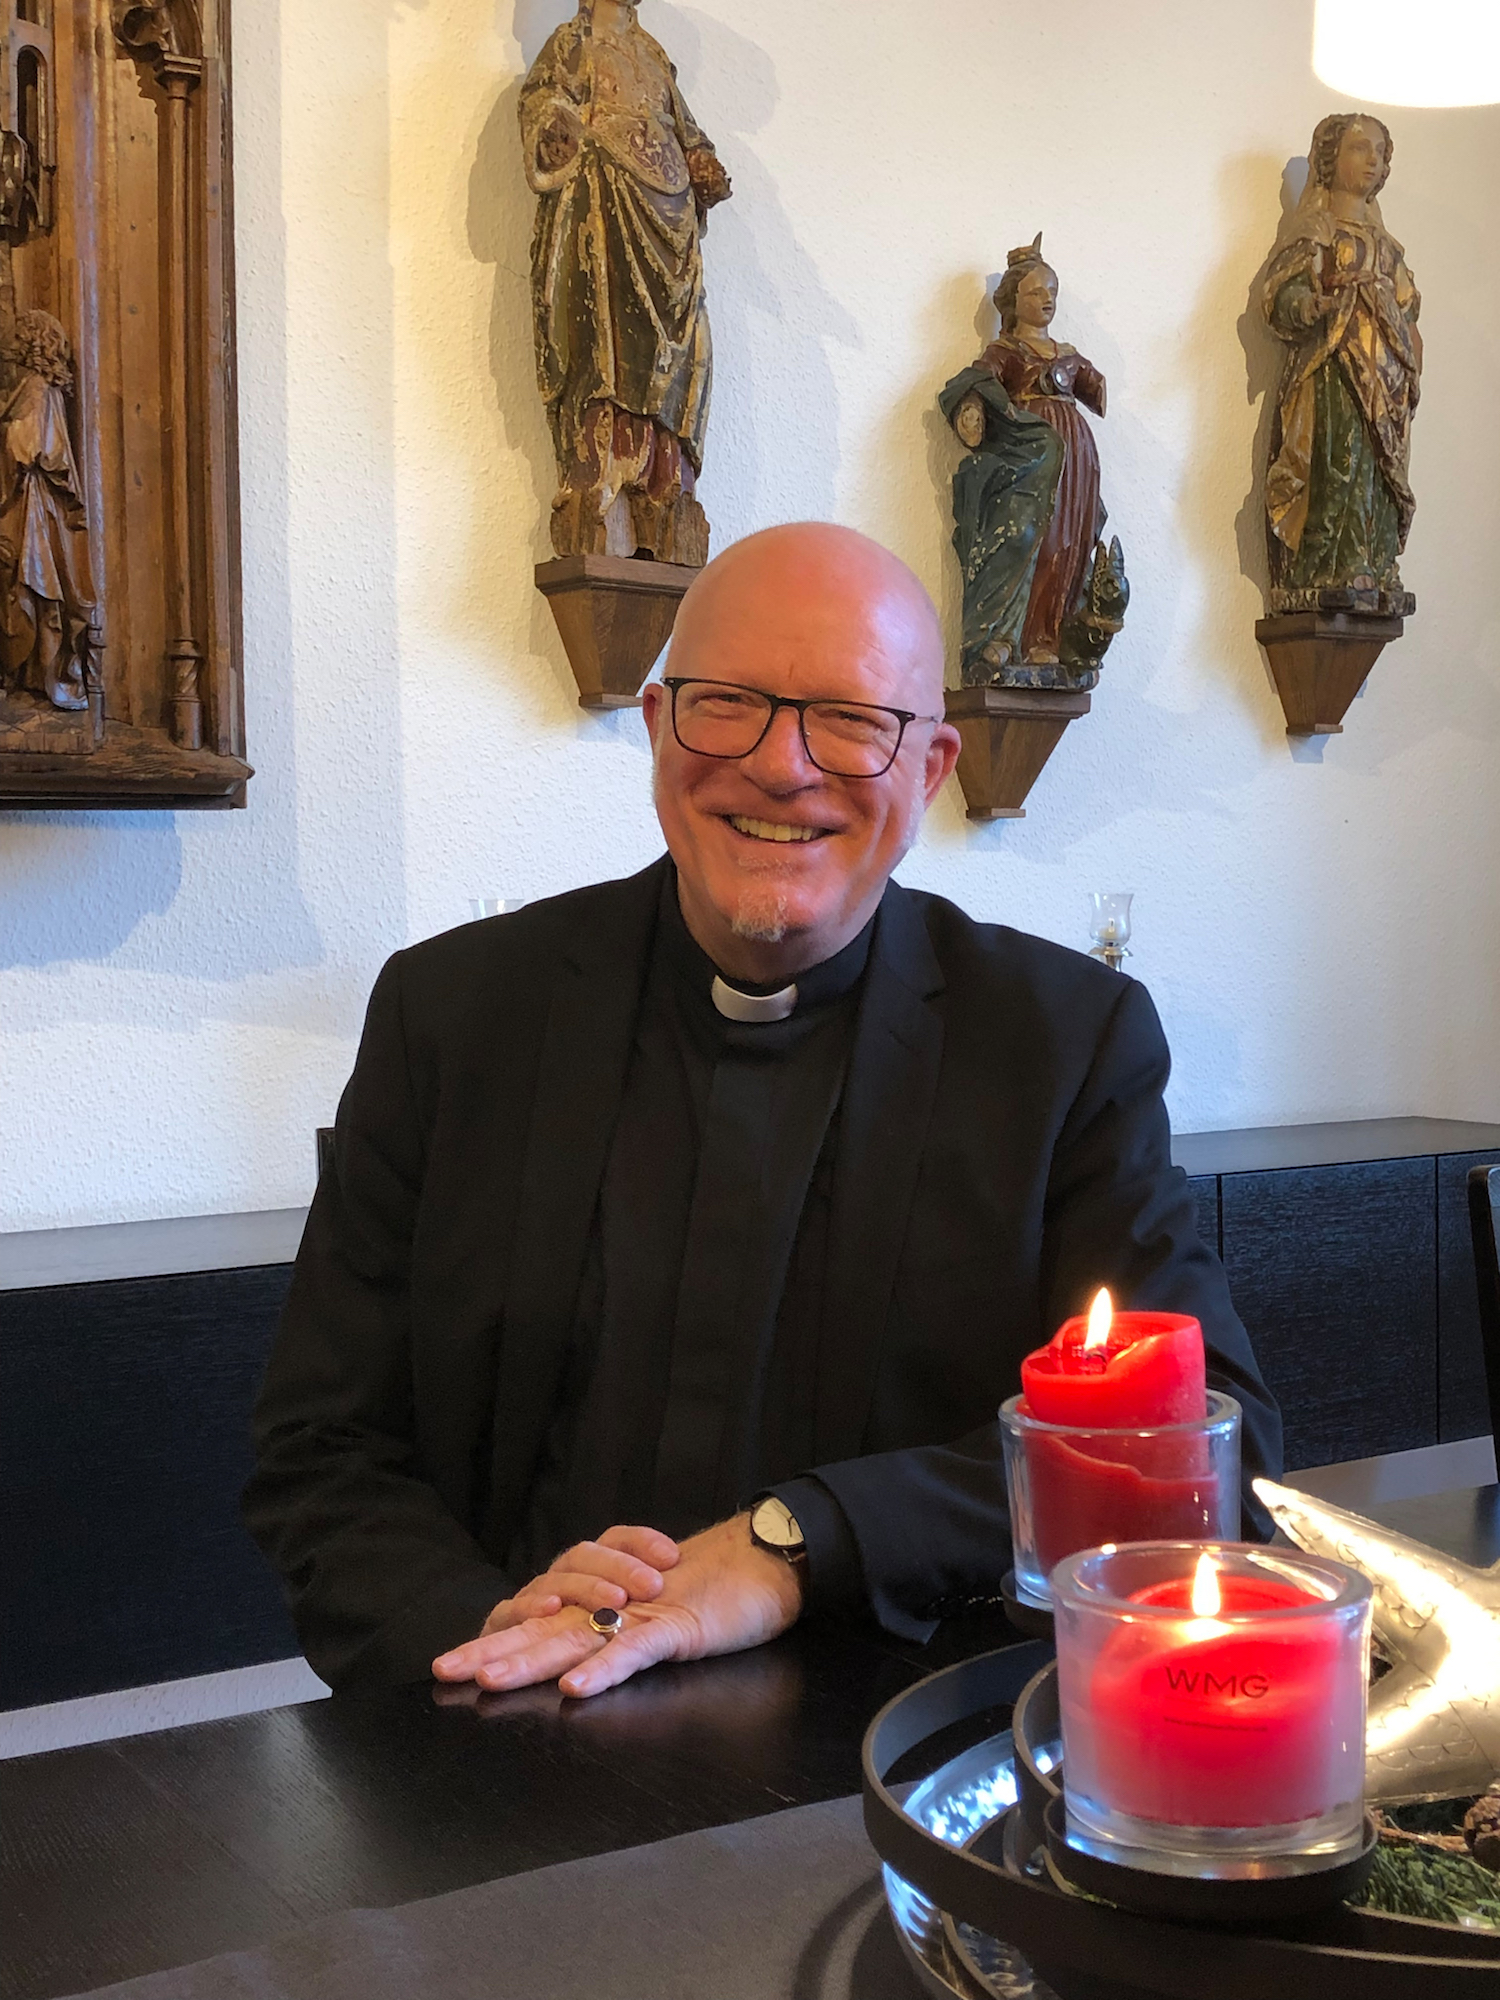 Pfarrer Werner Rombach leitet die größte Pfarrei und GdG im Bistum Aachen. (c) Garnet Manecke